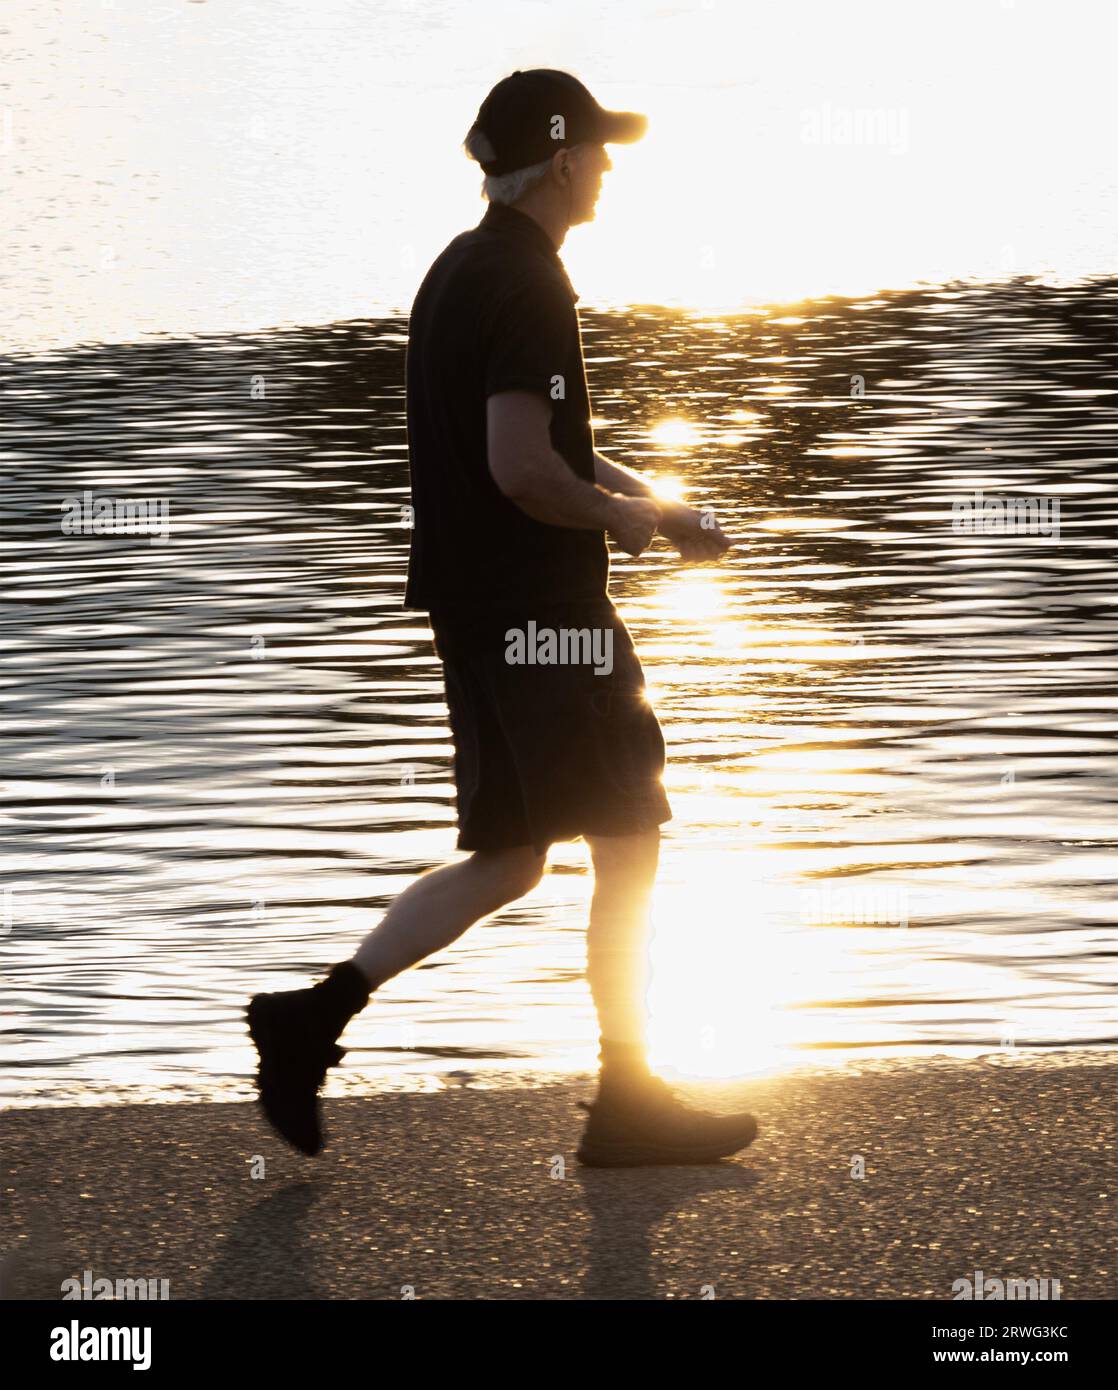 Teilweise Silhouette eines jungen Mannes in Sportausrüstung, der um den Round Pond in Kensington Gardens läuft; die Sonne ist hinter ihm, er ist Contra Jour Stockfoto